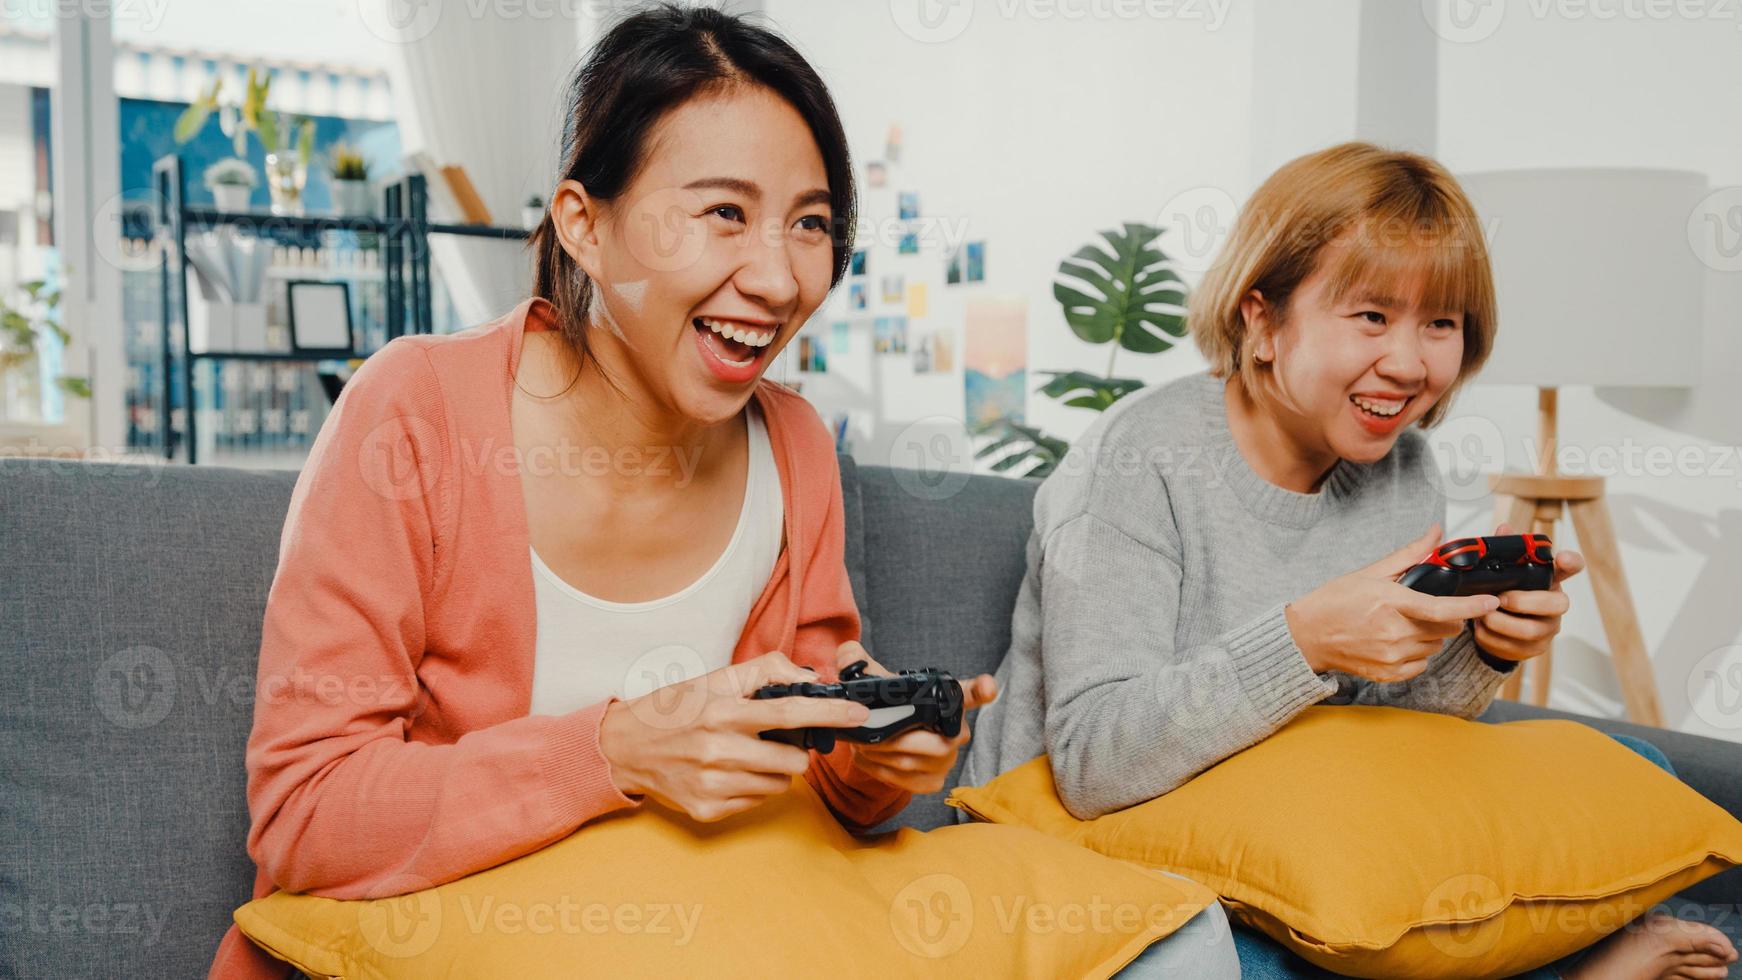 coppia di donne lesbiche lgbtq gioca a un videogioco a casa. giovane donna asiatica che utilizza un controller wireless che ha un momento felice e divertente insieme sul divano nel soggiorno. si divertono molto e festeggiano le vacanze. foto